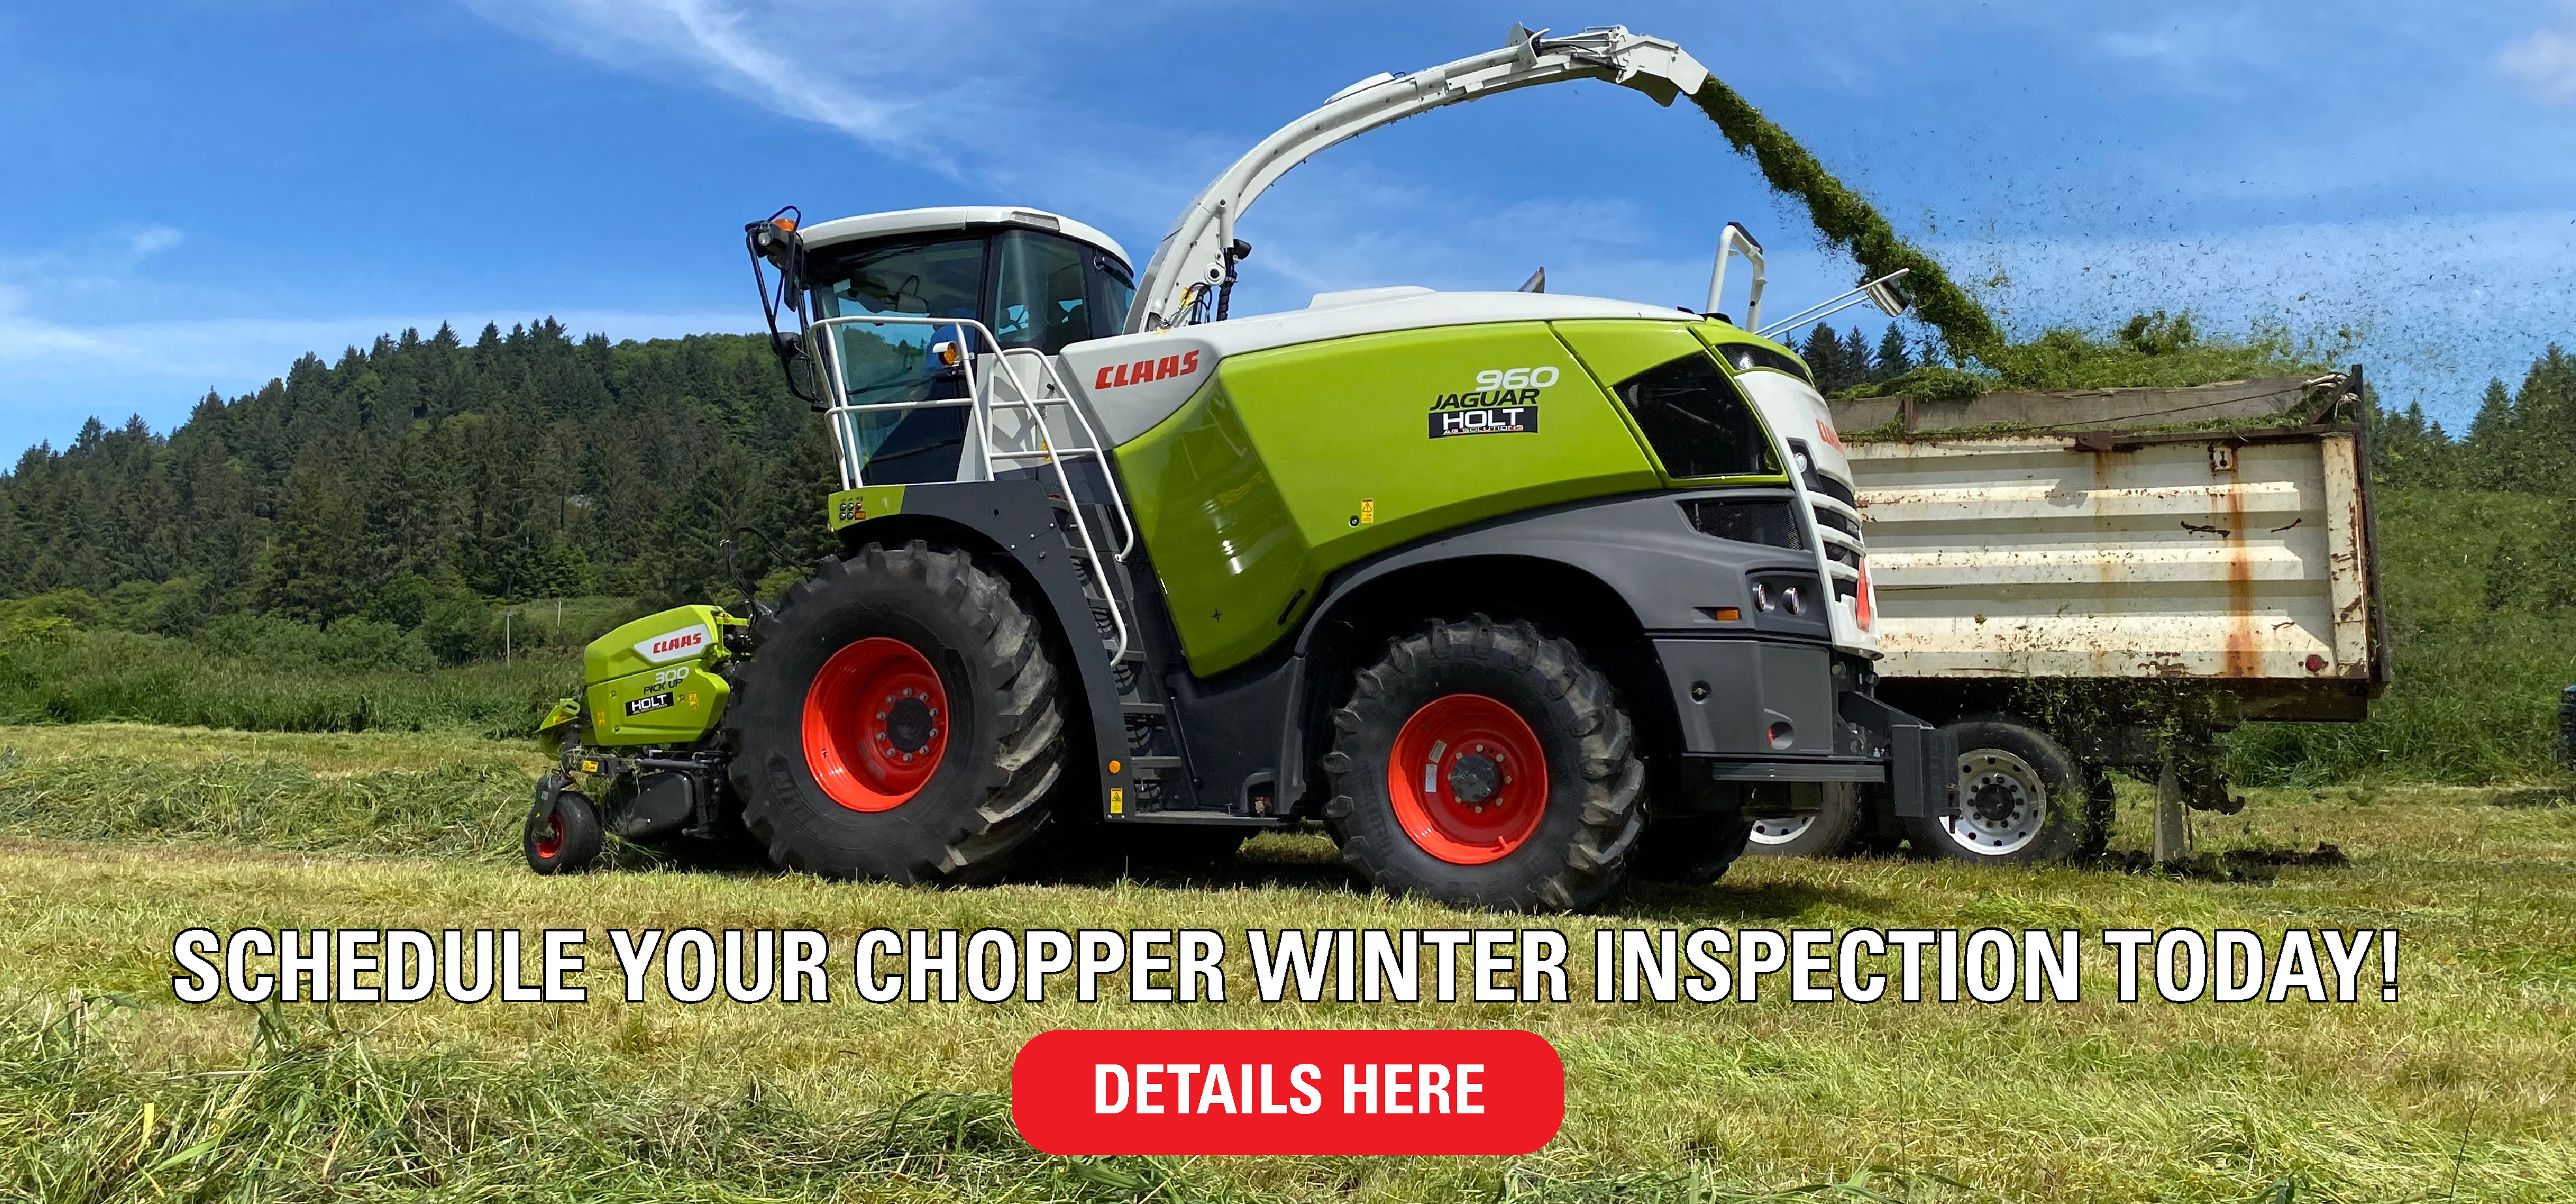 Chopper Winter Inspection